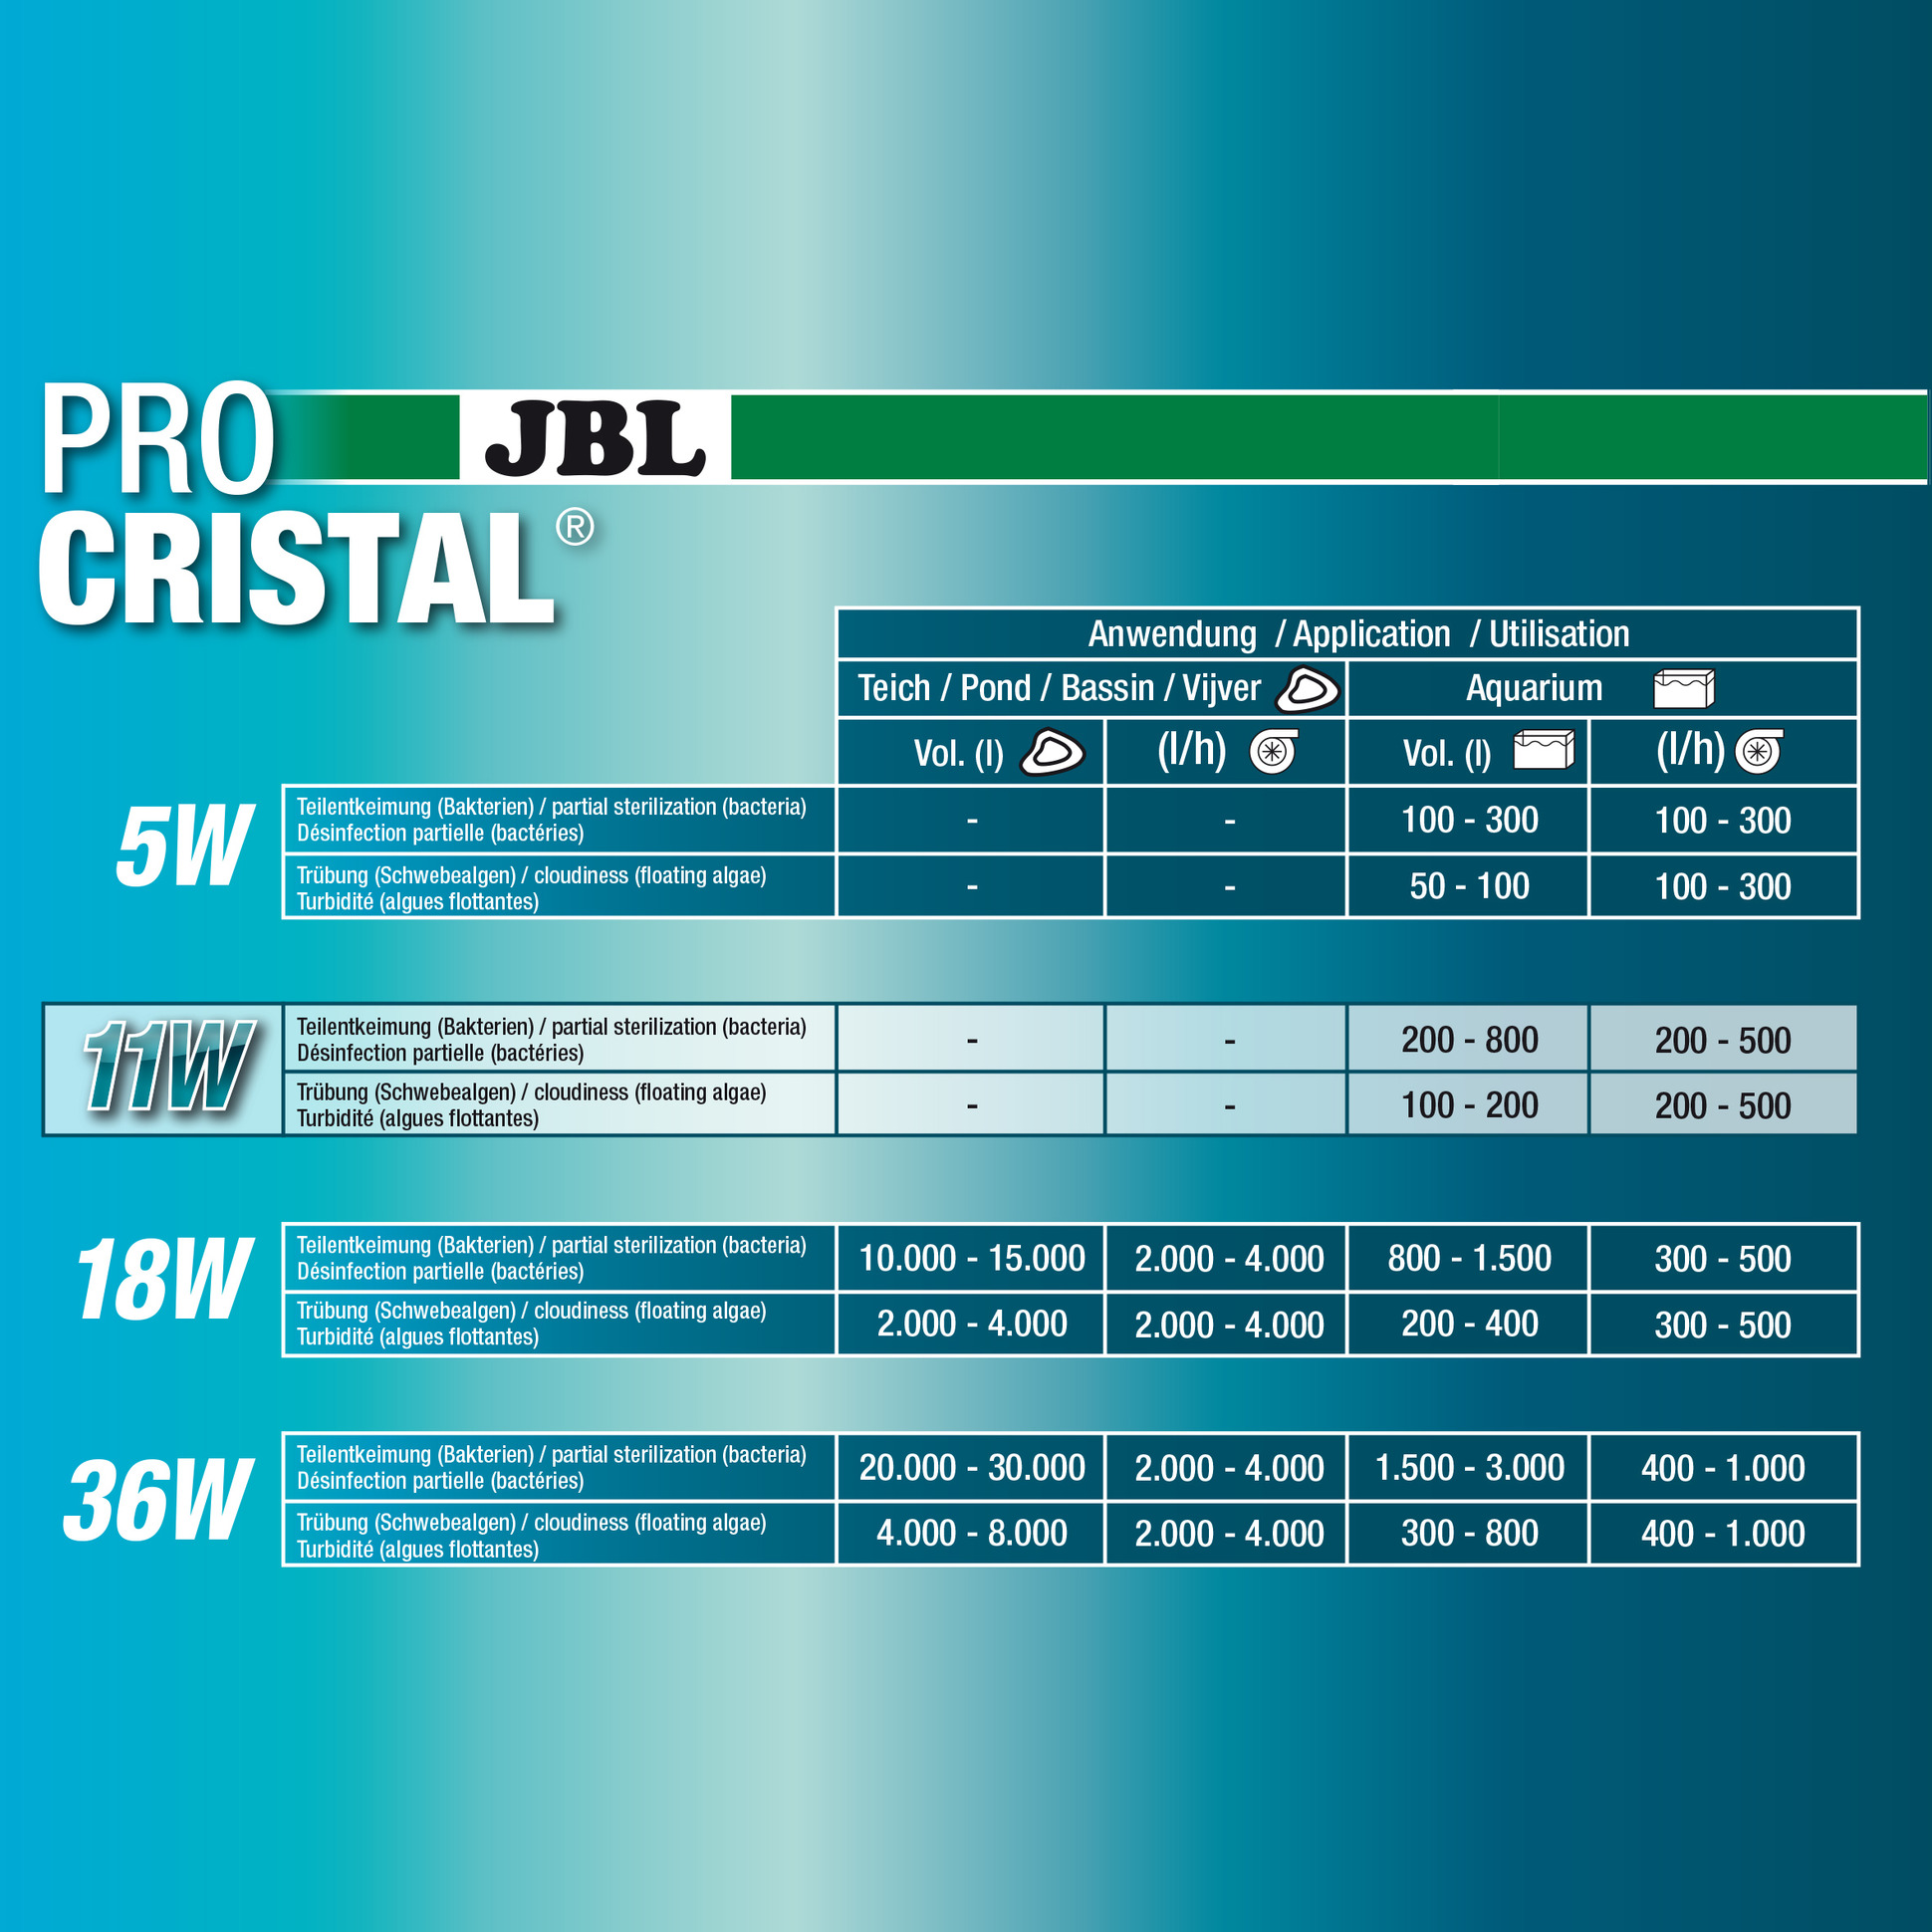 Стерилизатор JBL ProCristal Compact UV-C 11Вт